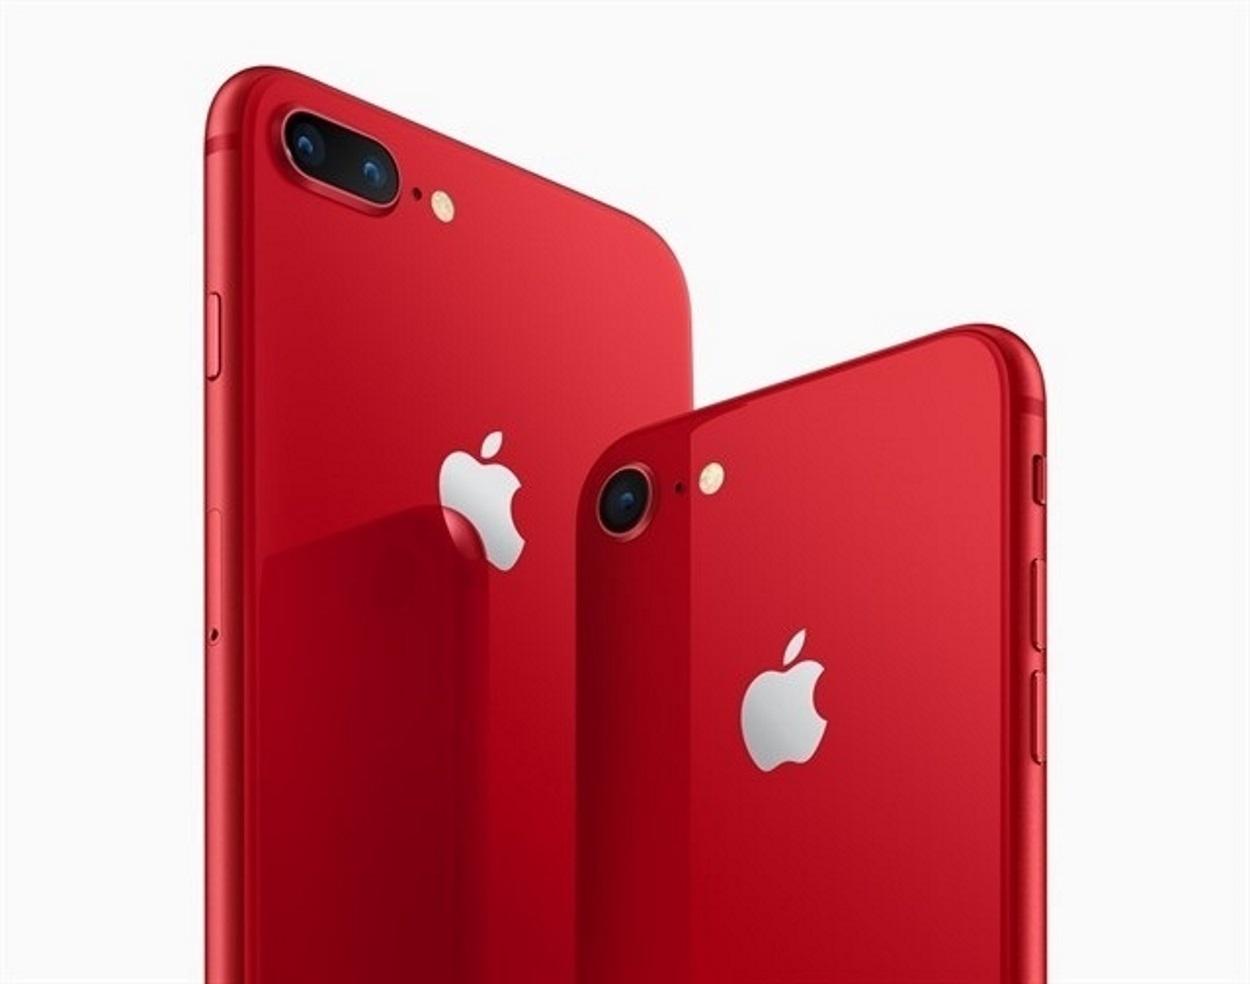 Imagen de un iPhone de color rojo